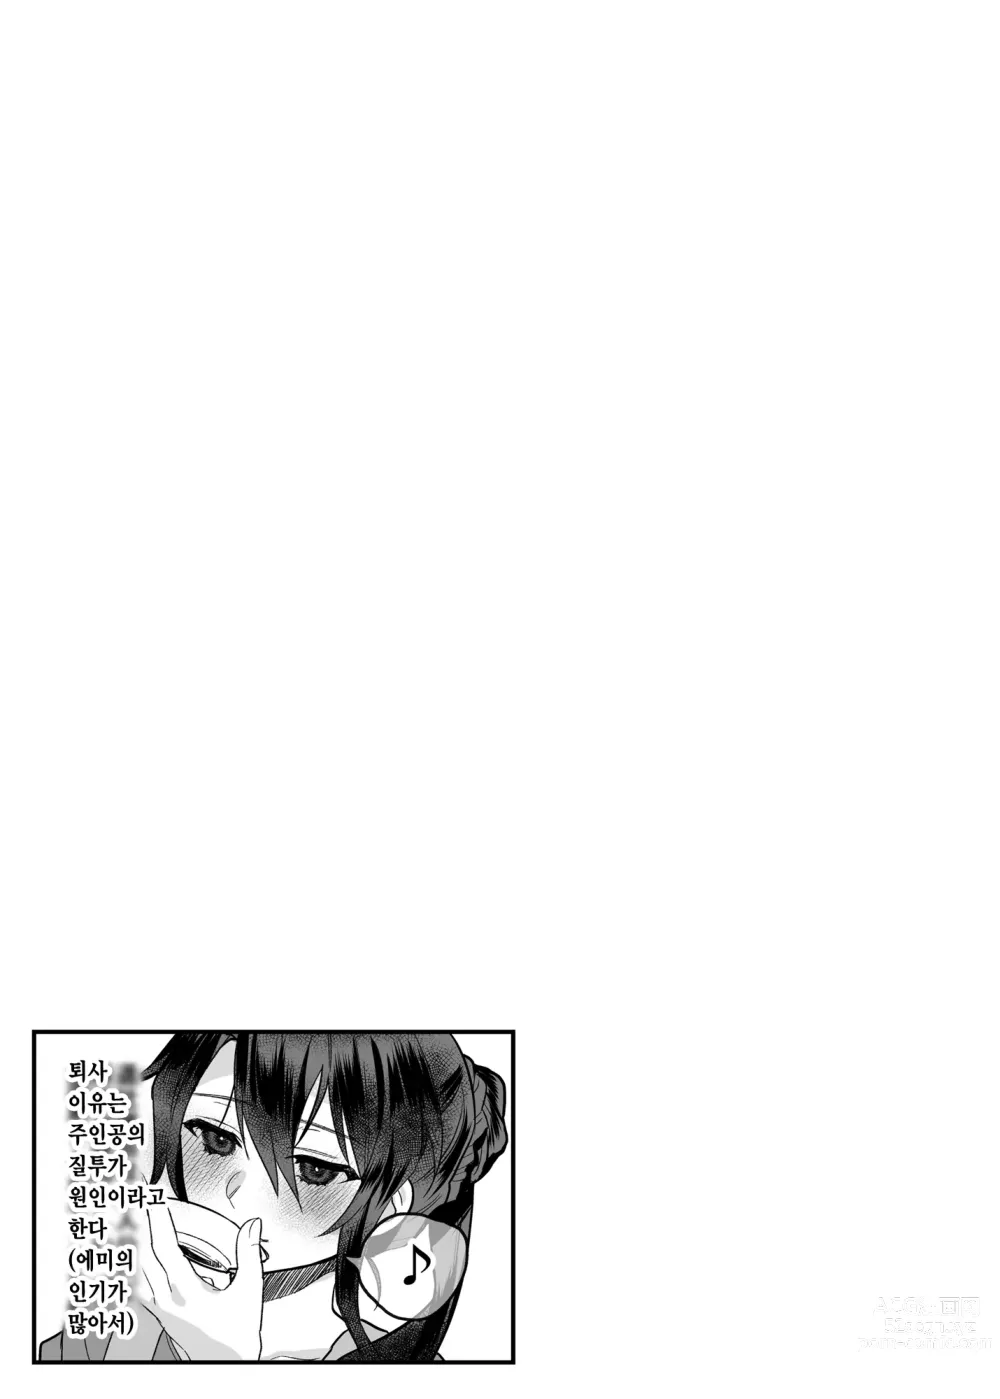 Page 177 of doujinshi nikukyu 총집편 첫번쨰